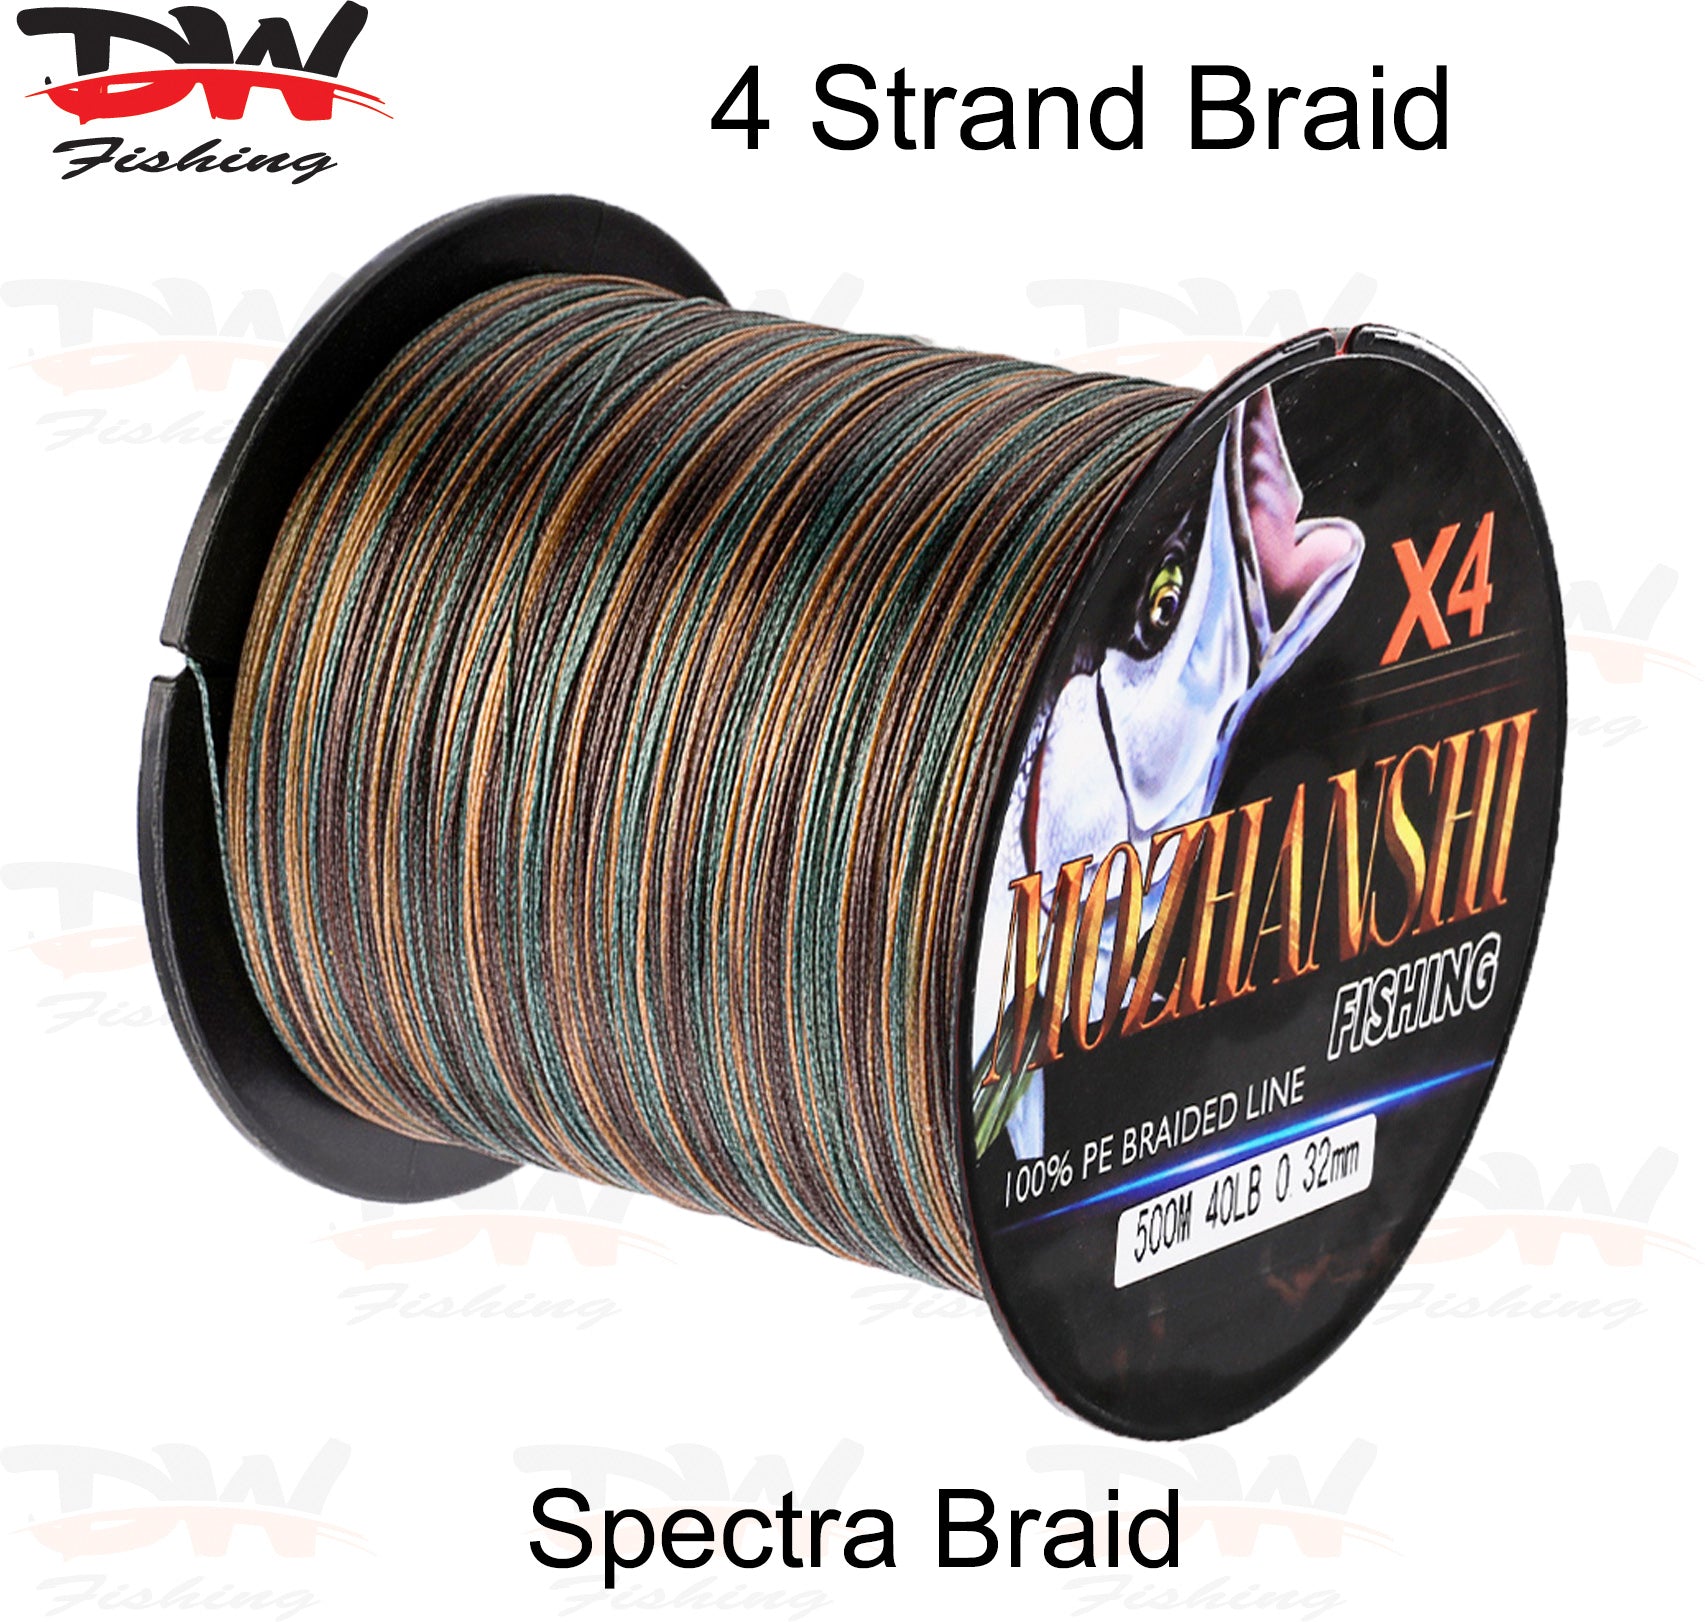 Braid Fishing Line | Camo Green Colour X4 Braid | MOZHANSHI Spectra Braid